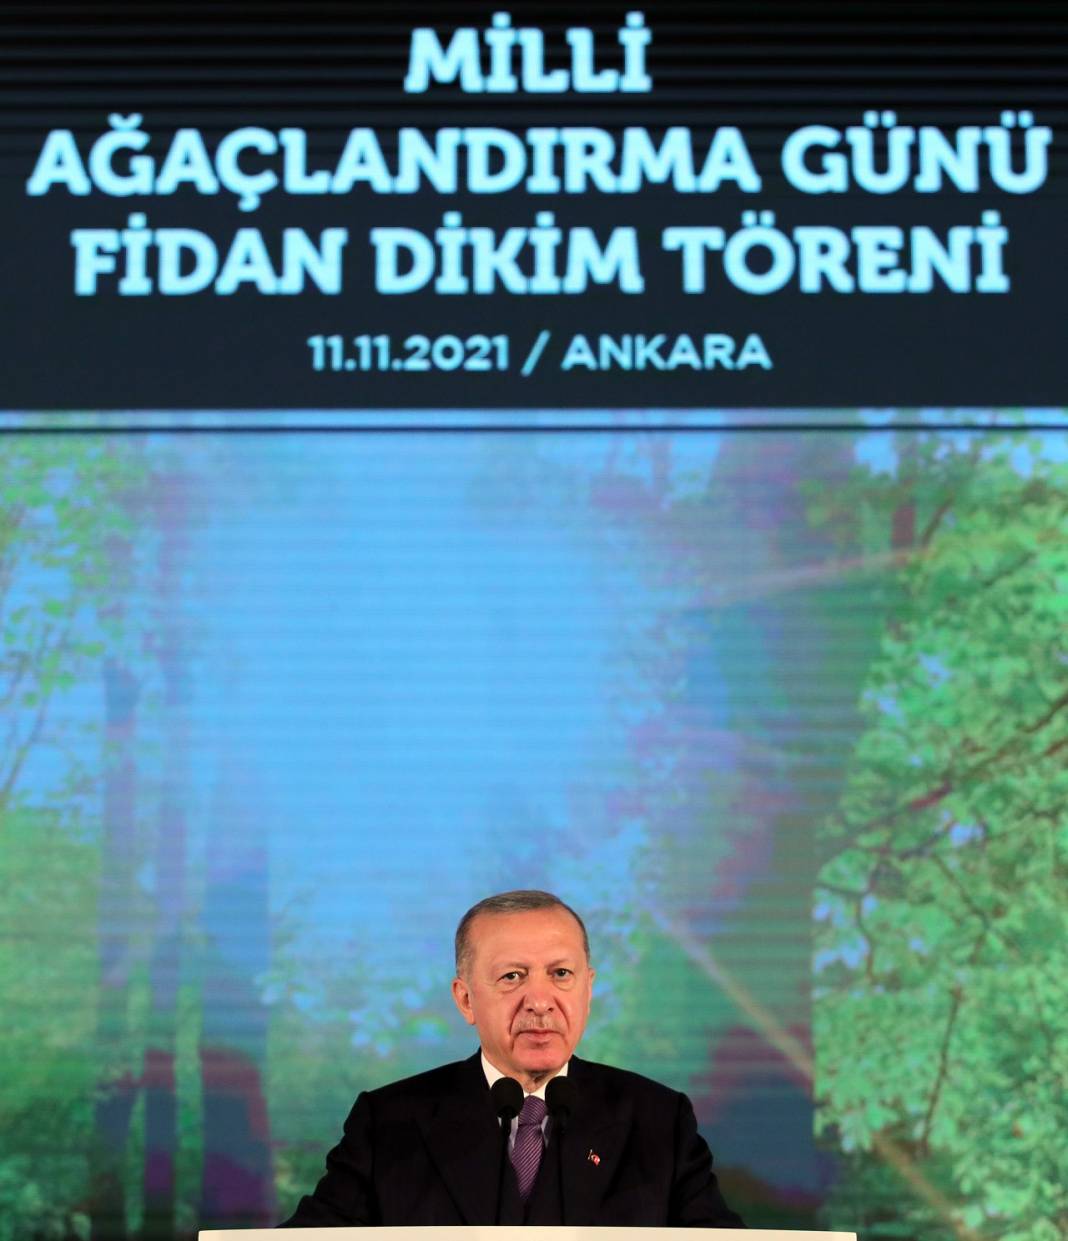 Türkiye Cumhurbaşkanı Recep Tayyip Erdoğan Milli Ağaçlandırma Günü Fidan Dikim Töreni’ne katıldı 11